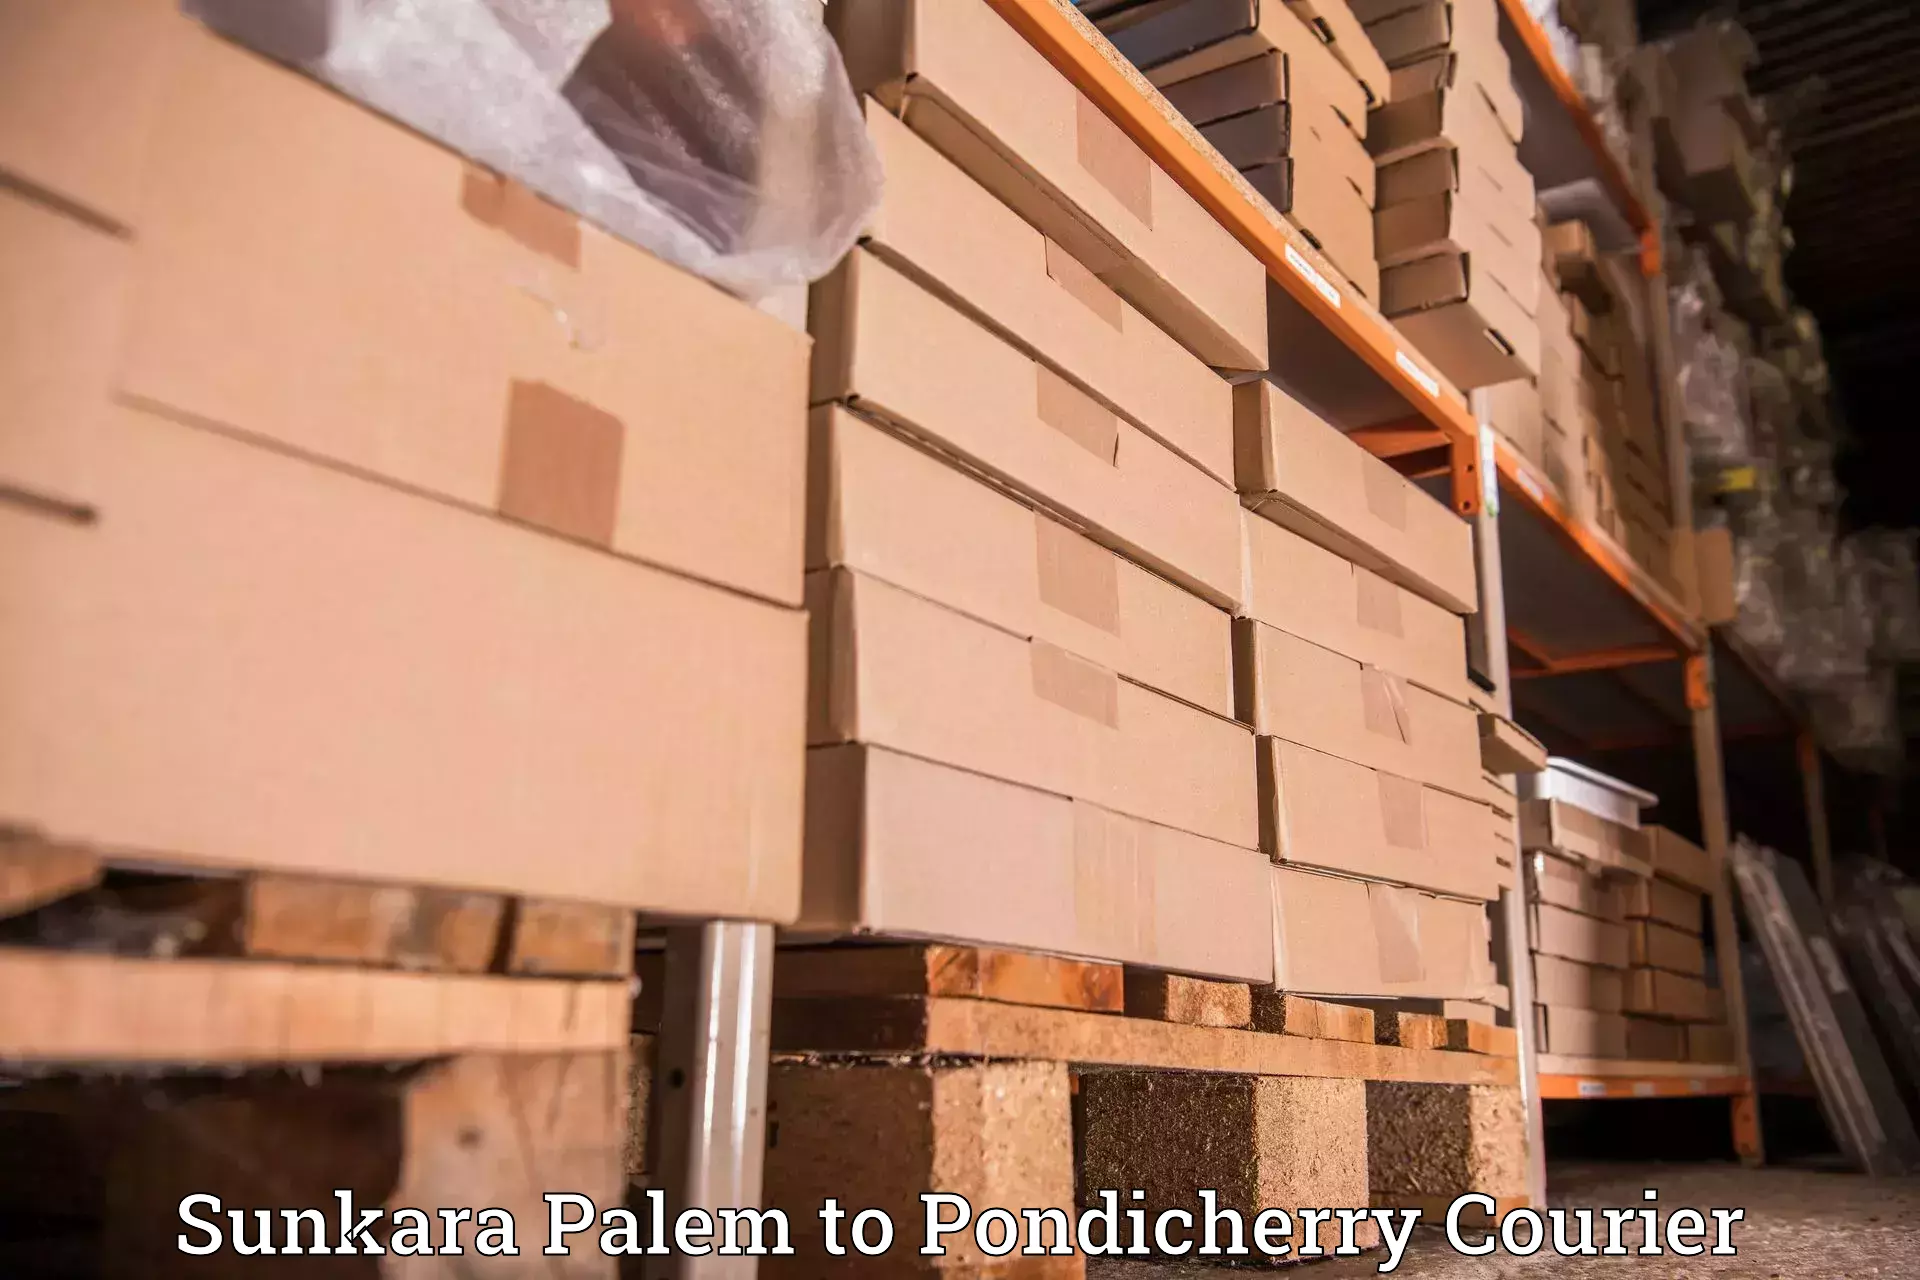 Automated parcel services Sunkara Palem to Pondicherry University